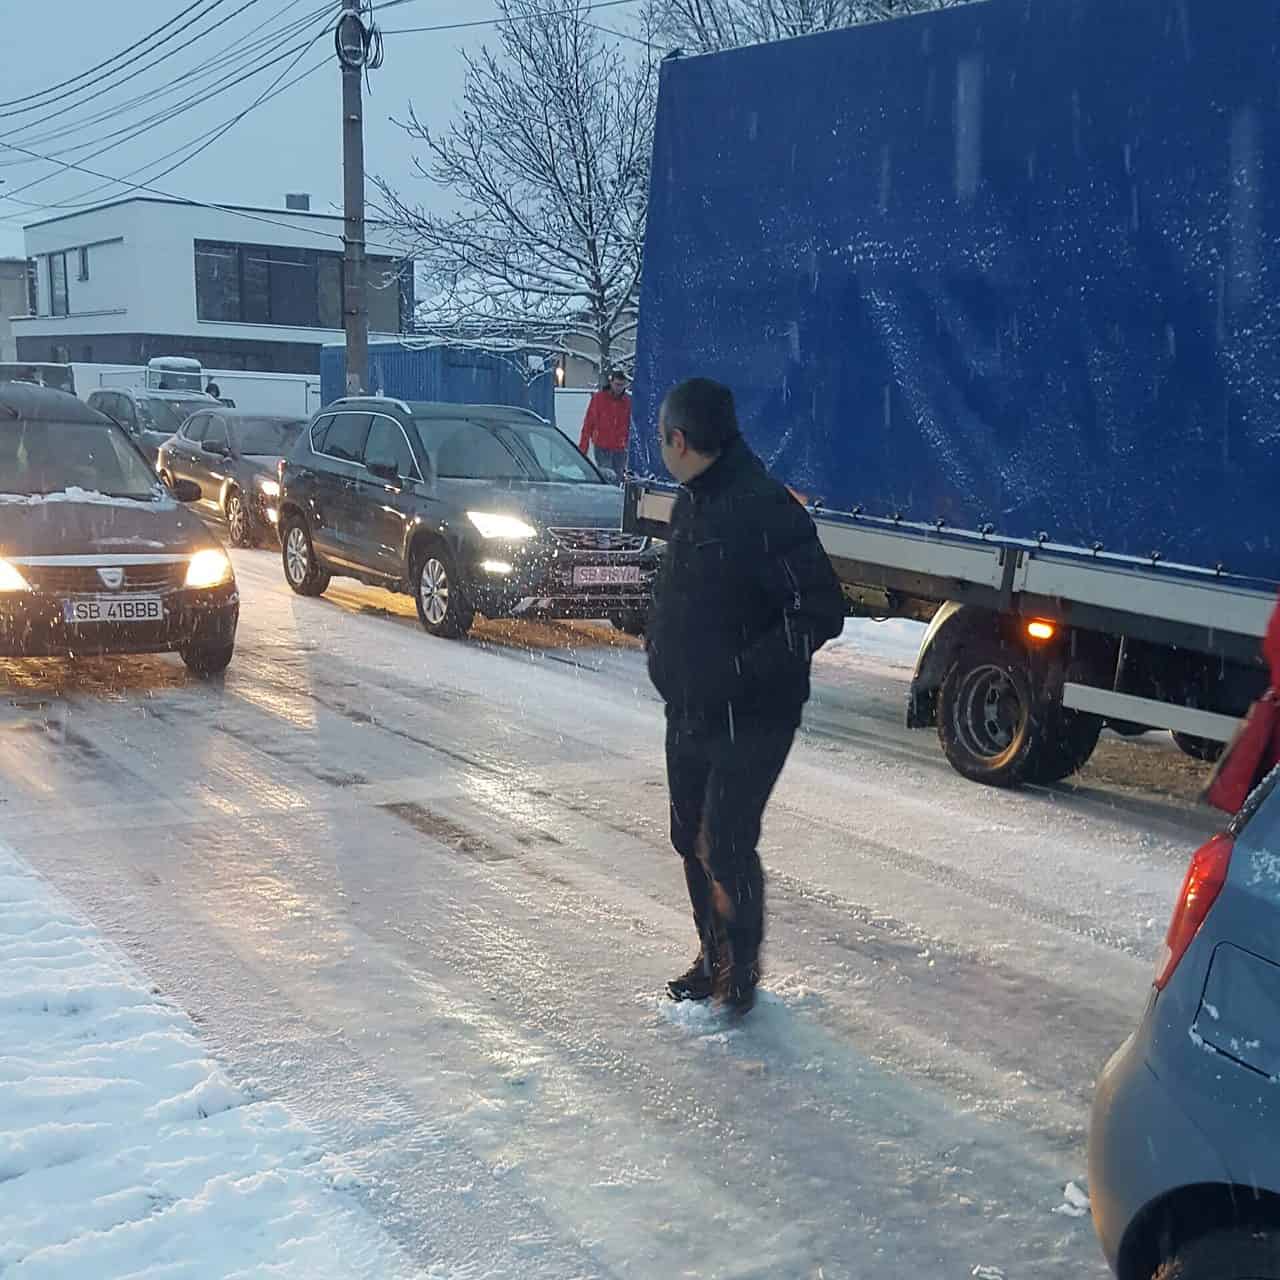 foto - trafic paralizat de ninsoare la primele ore în sibiu - șoferii au răbufnit: „ieri umblau plugurile, azi niciunul”